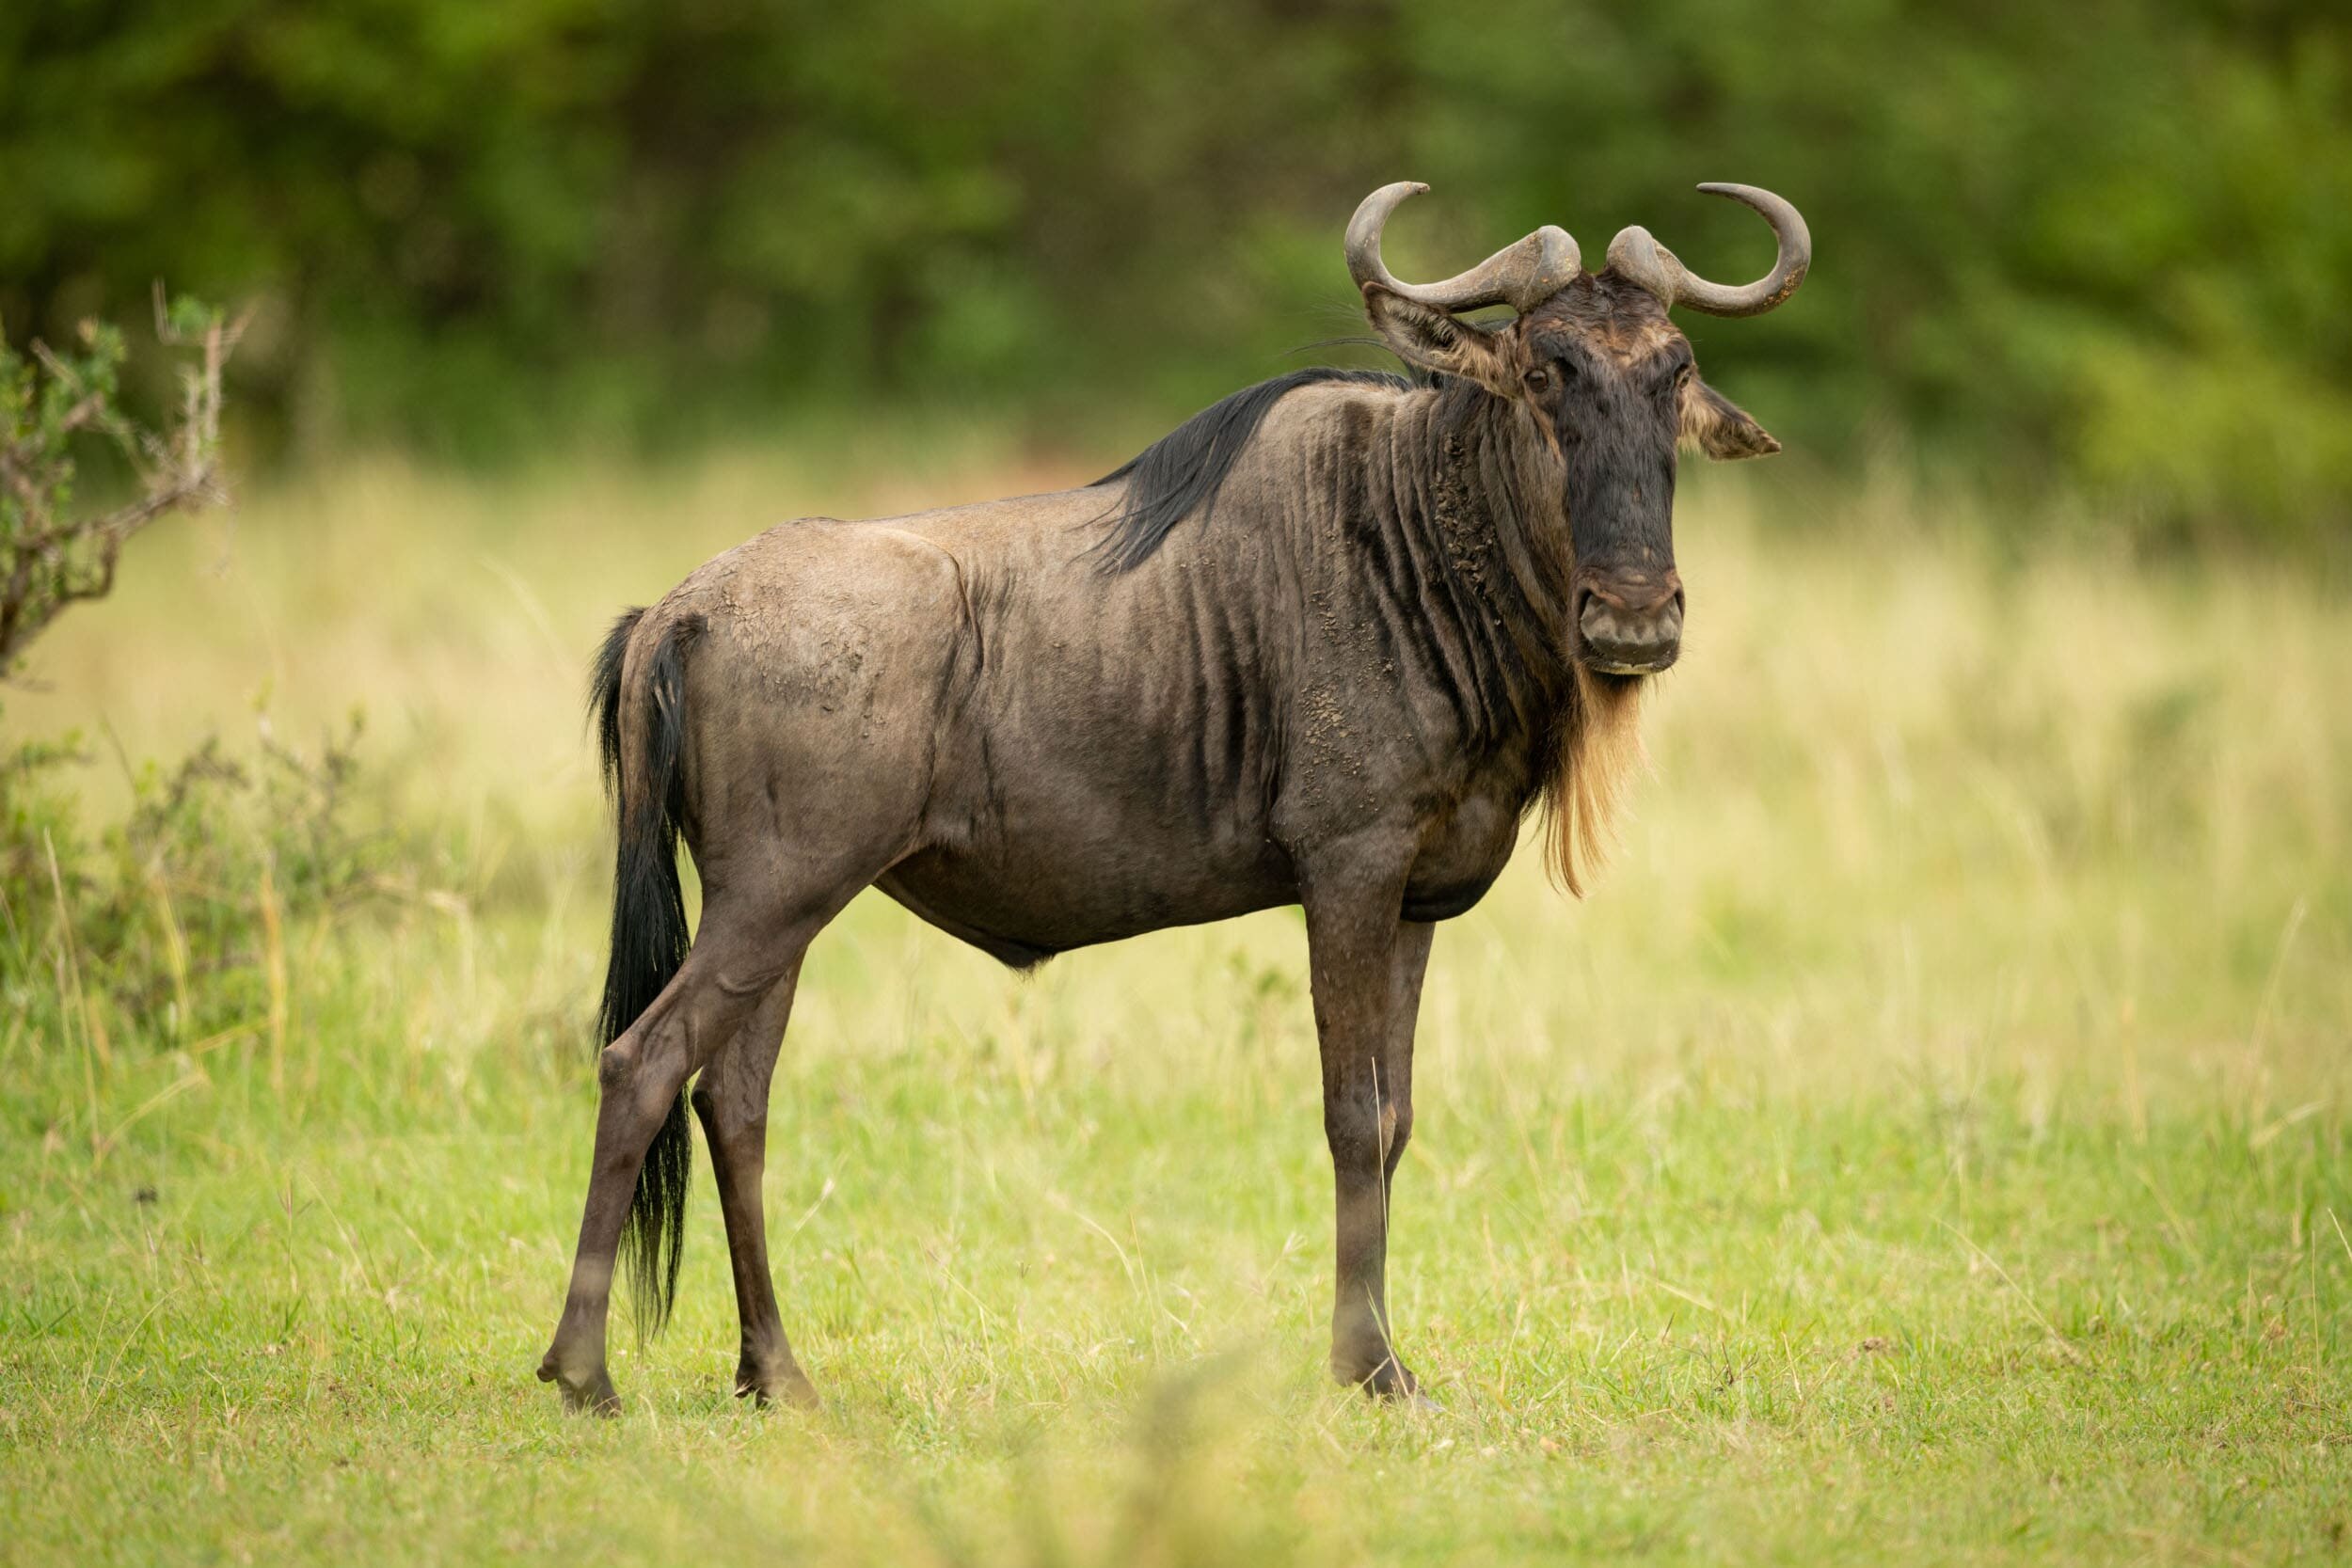 Blue wildebeest stands eyeing camera in grassland: 70 downloads